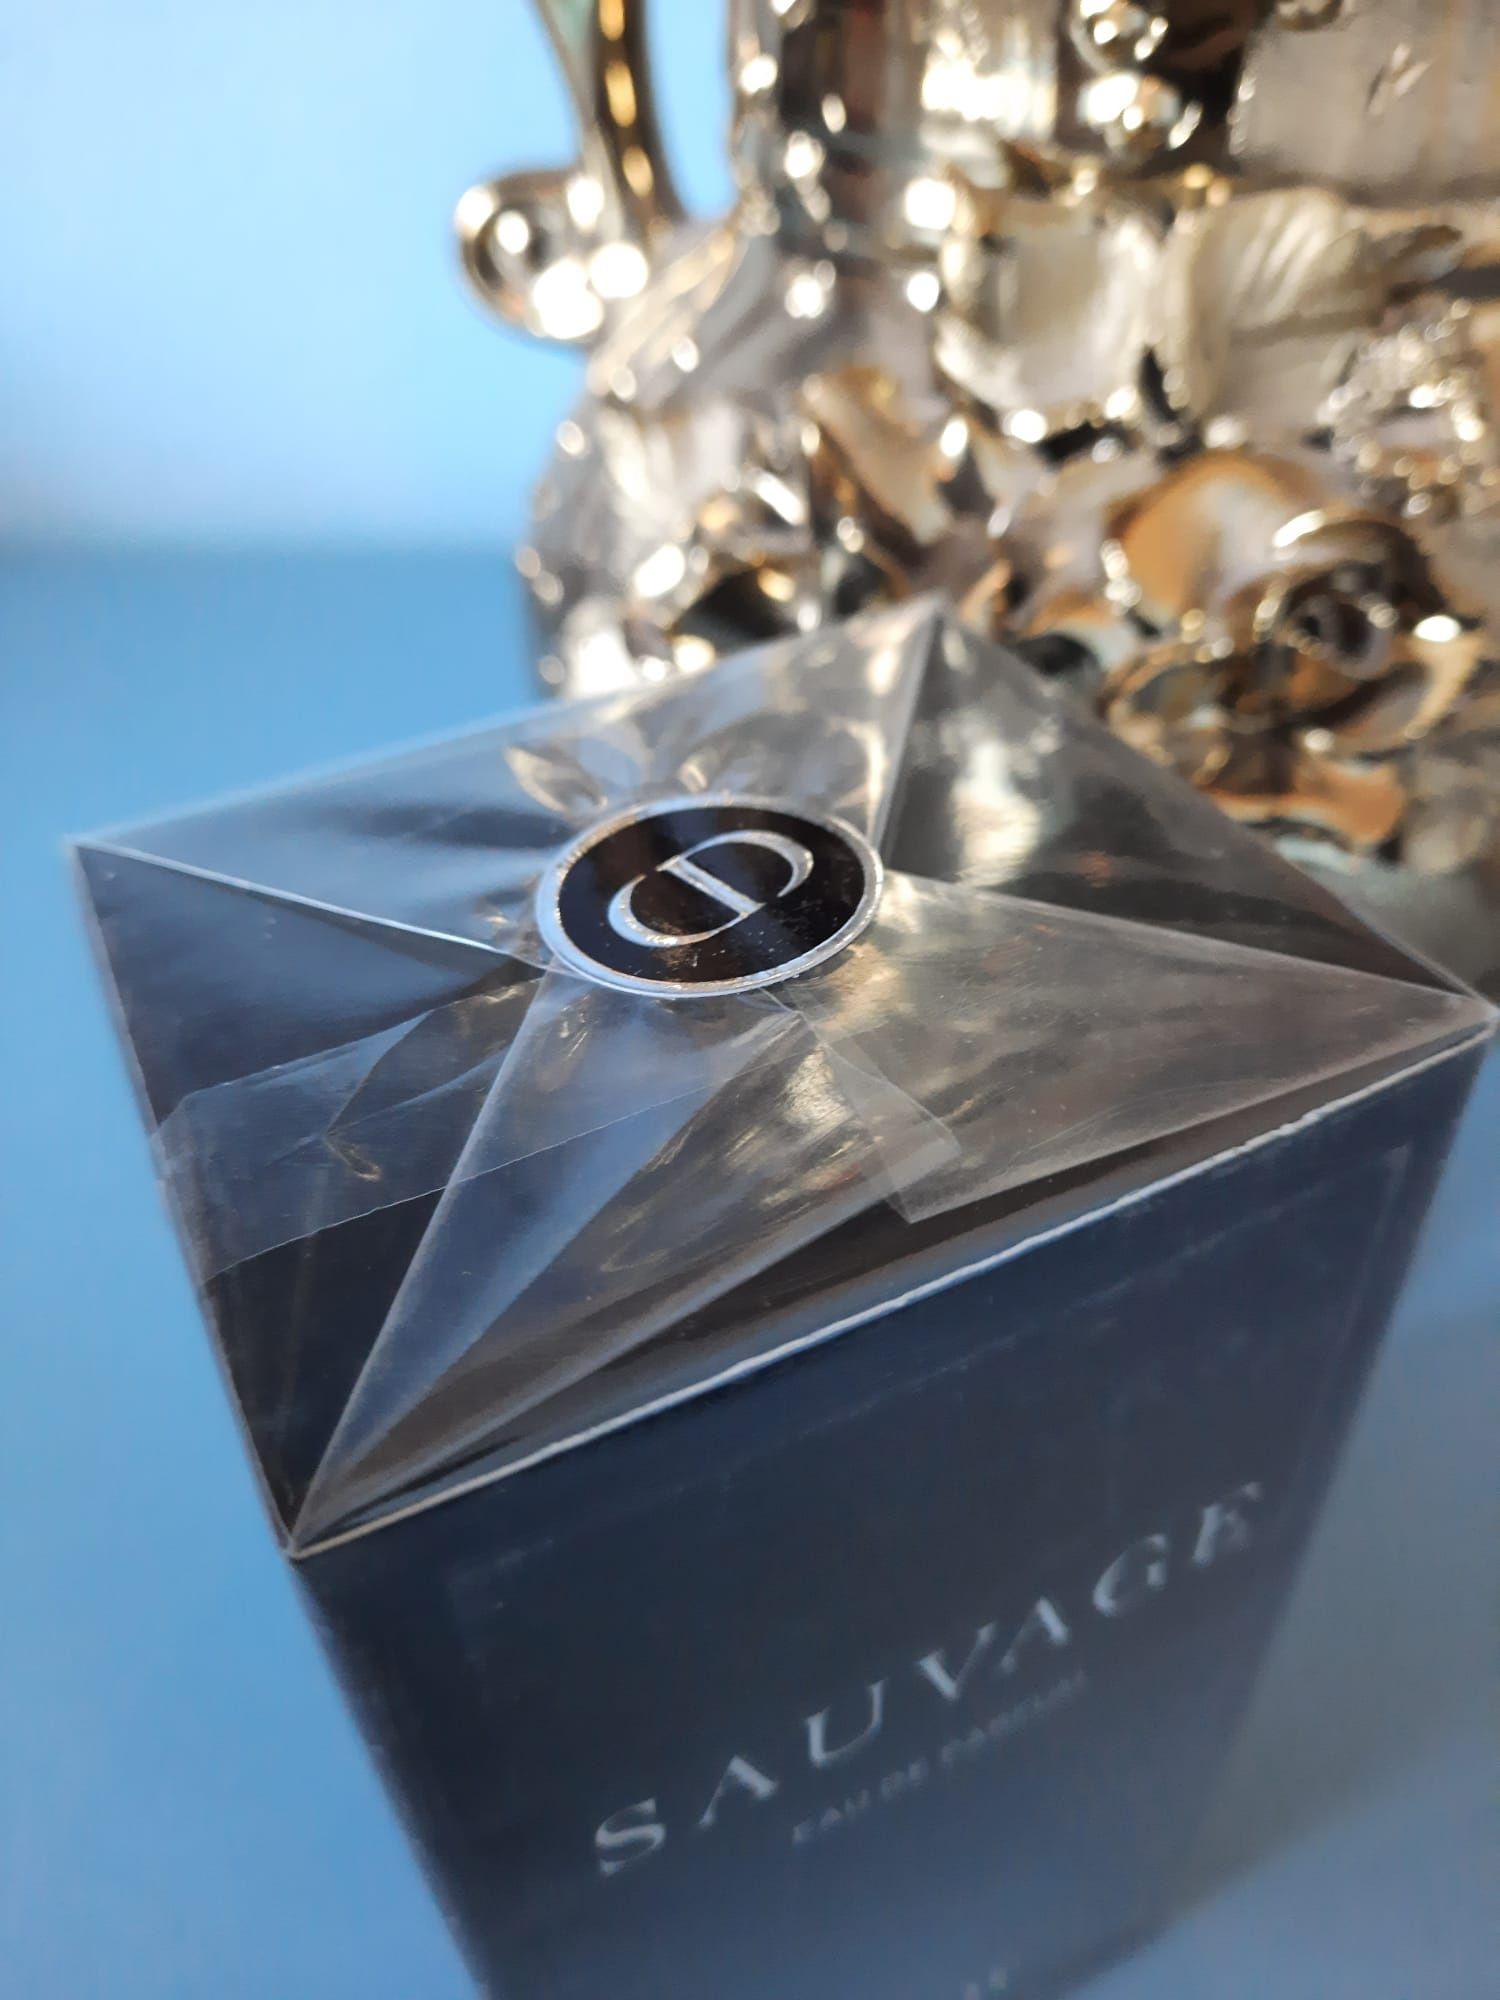 Oferta Parfum Sauvage Dior sigilat